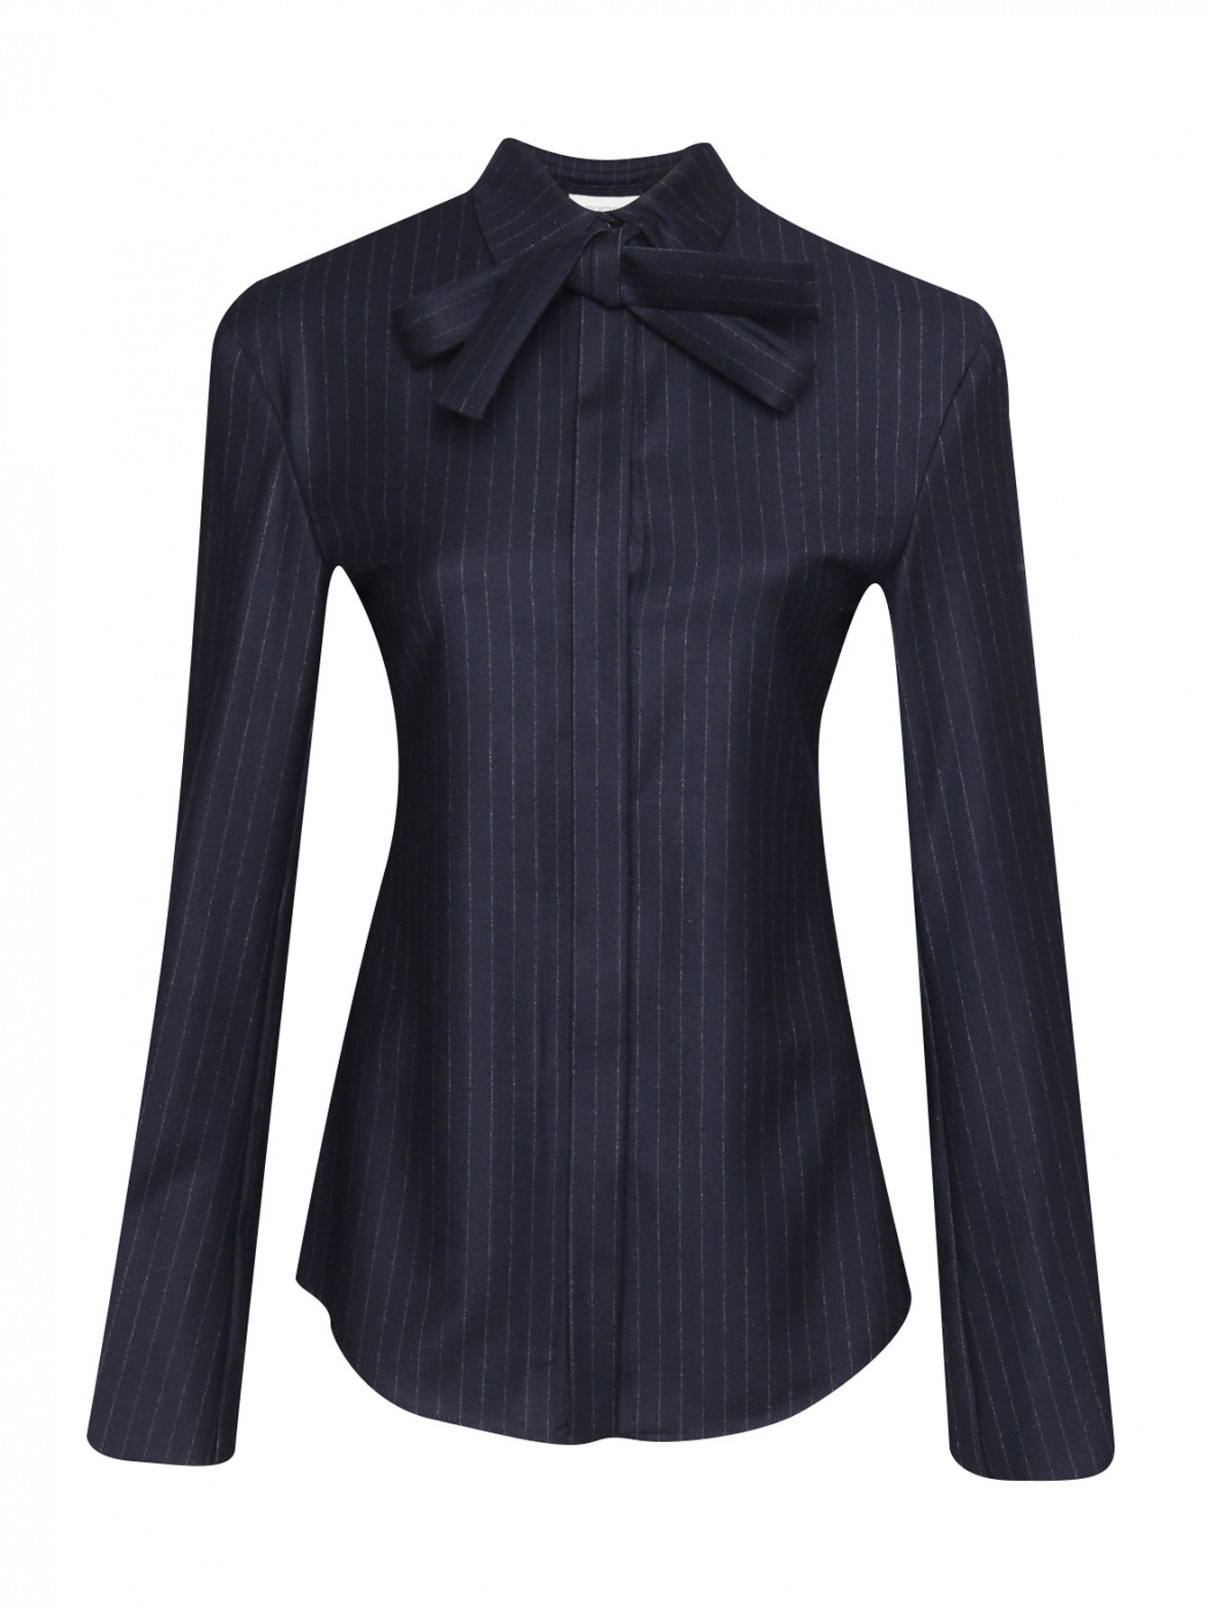 Блуза из шерсти с узором полоска Sportmax  –  Общий вид  – Цвет:  Синий